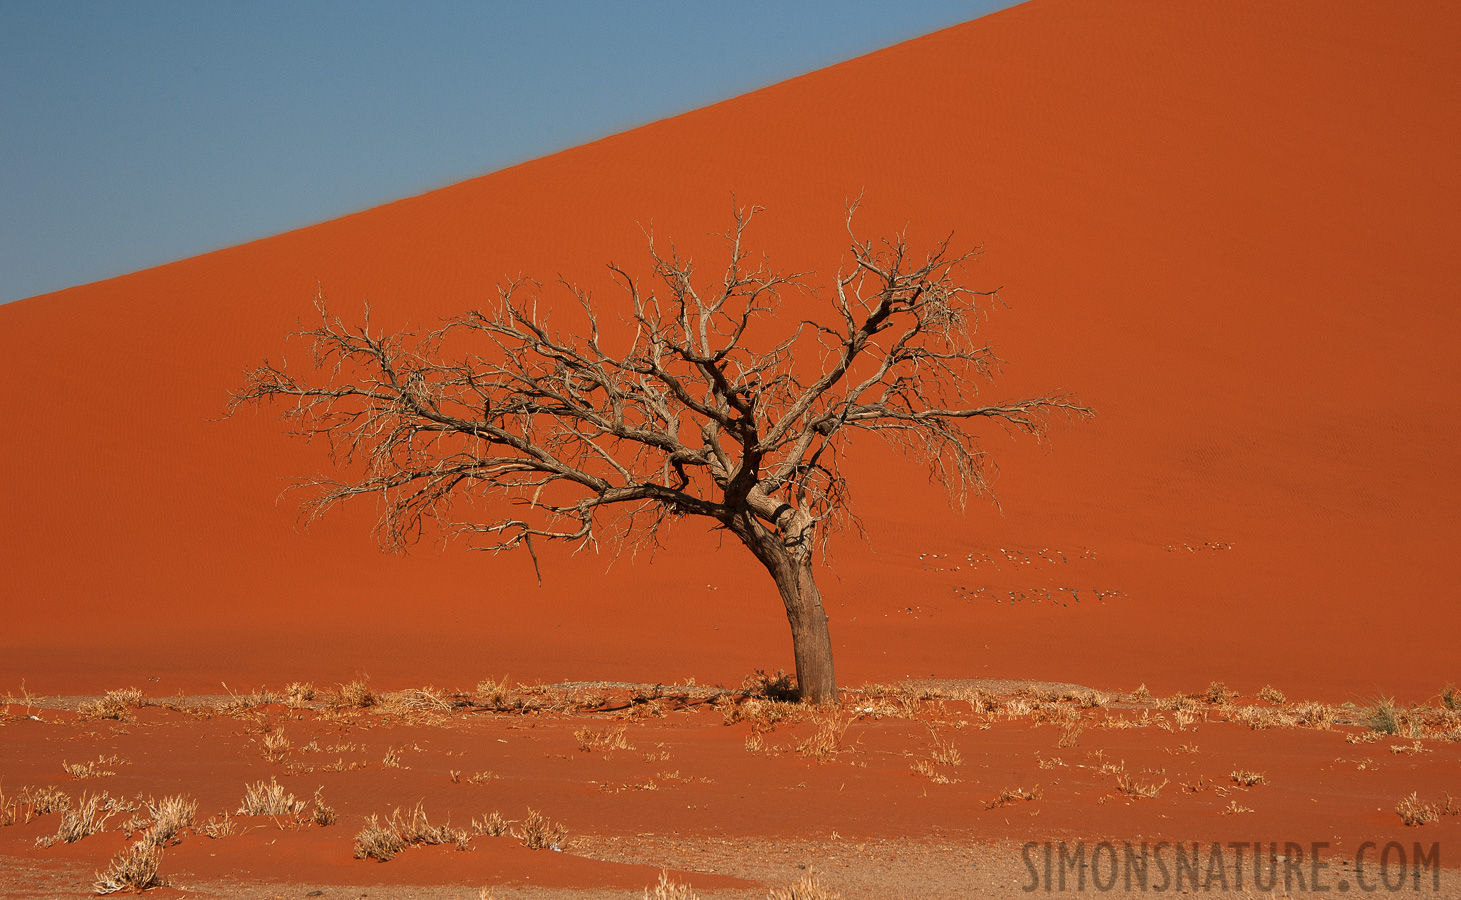 Namib-Naukluft National Park [98 mm, 1/320 sec at f / 11, ISO 400]